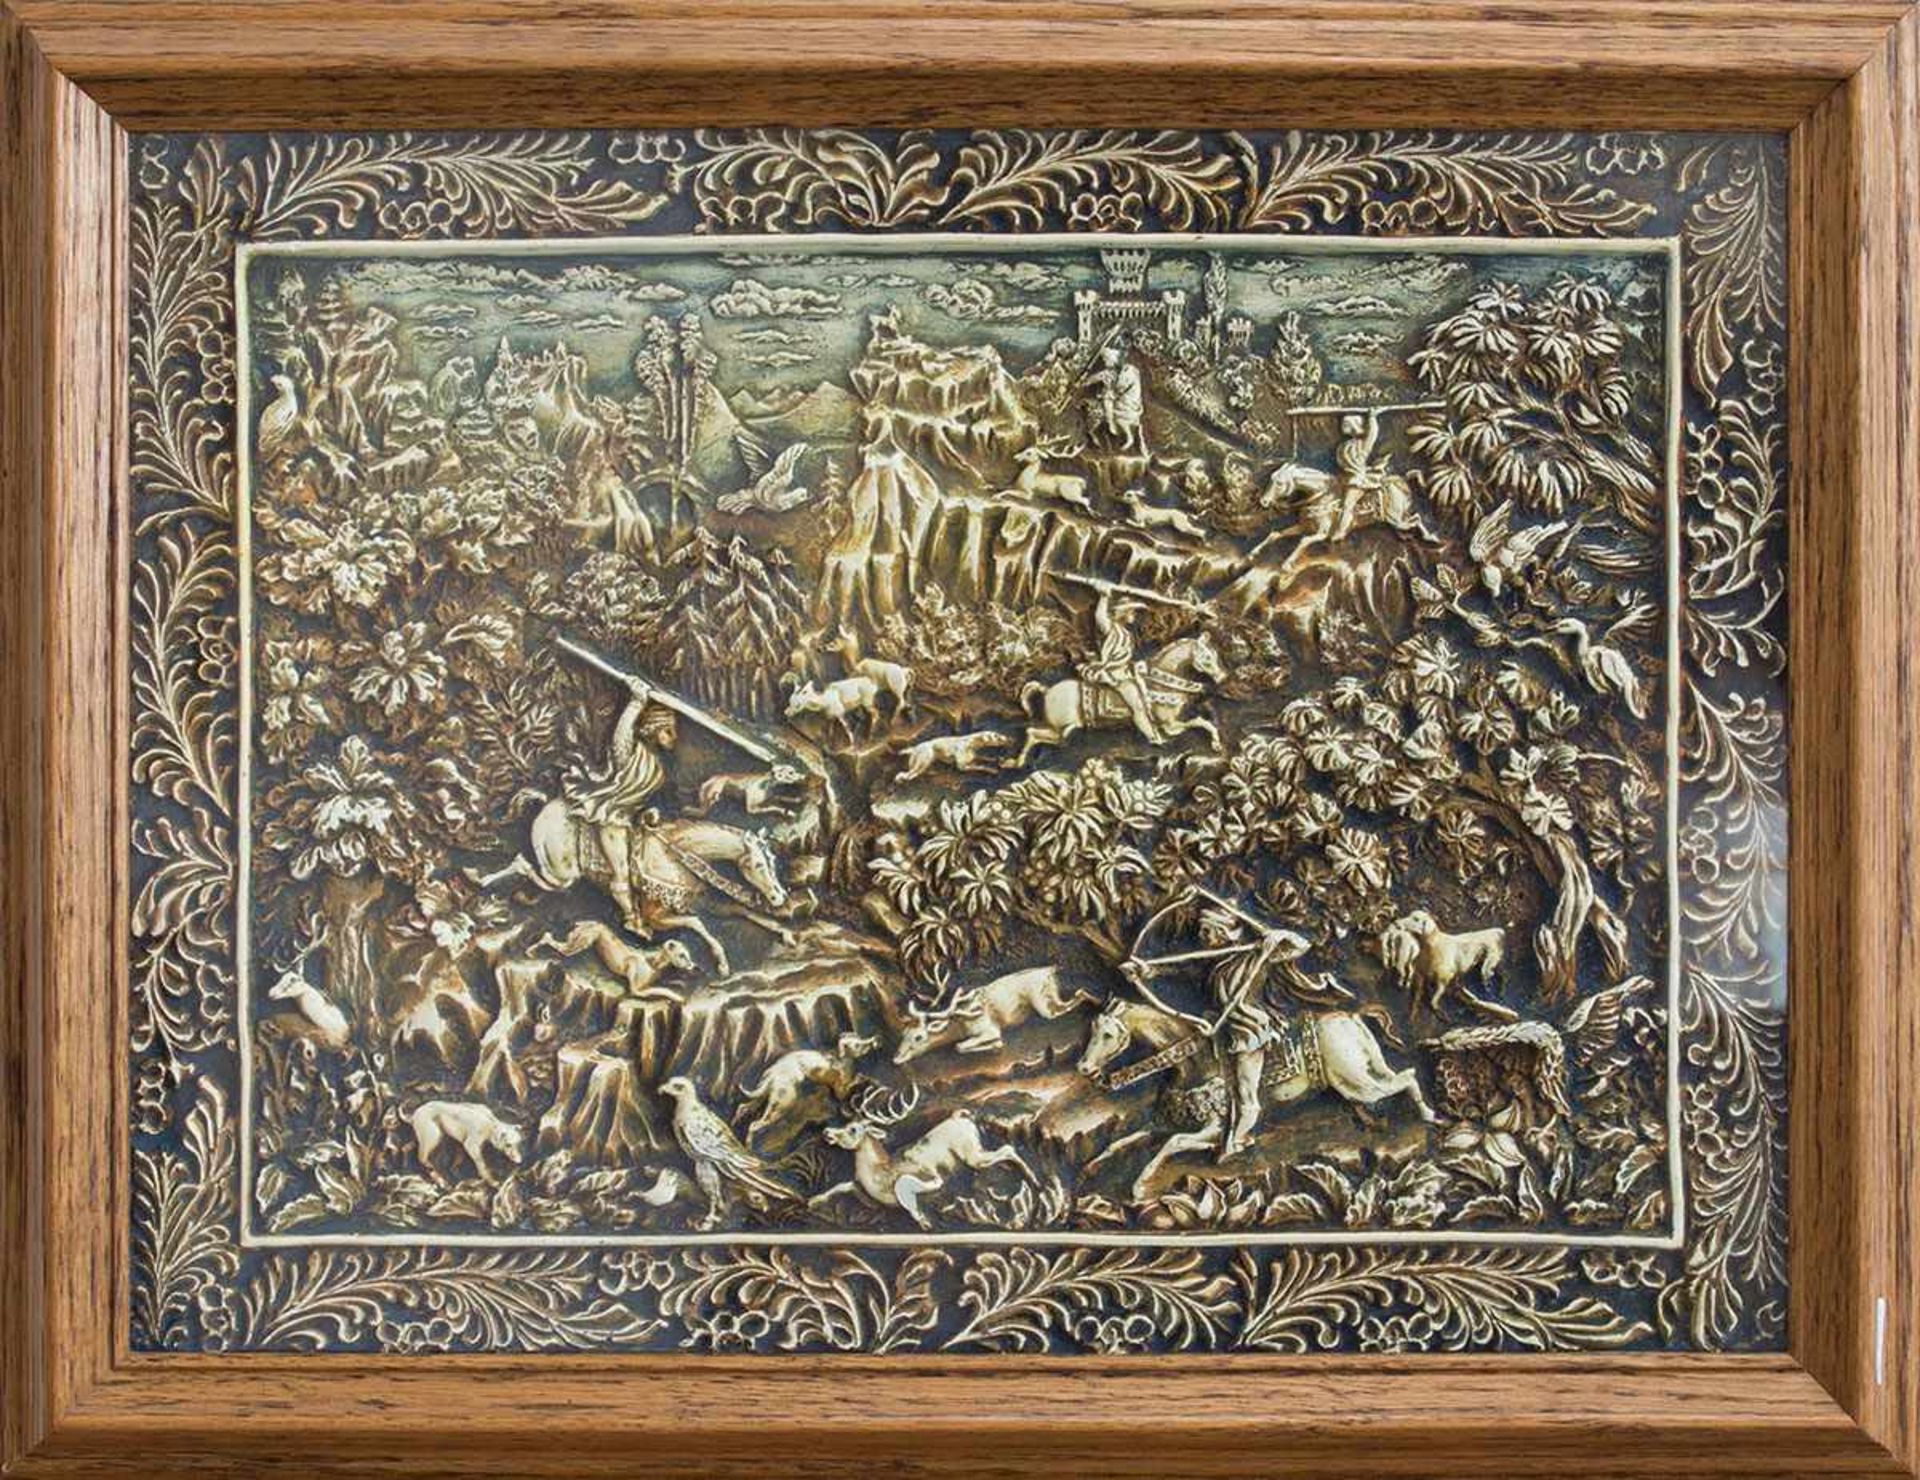 Wachsbild "Toscanische Jagd" - gestaltet nach Motiven von Benozzo Gozzoli (Renaissancekünstler d.